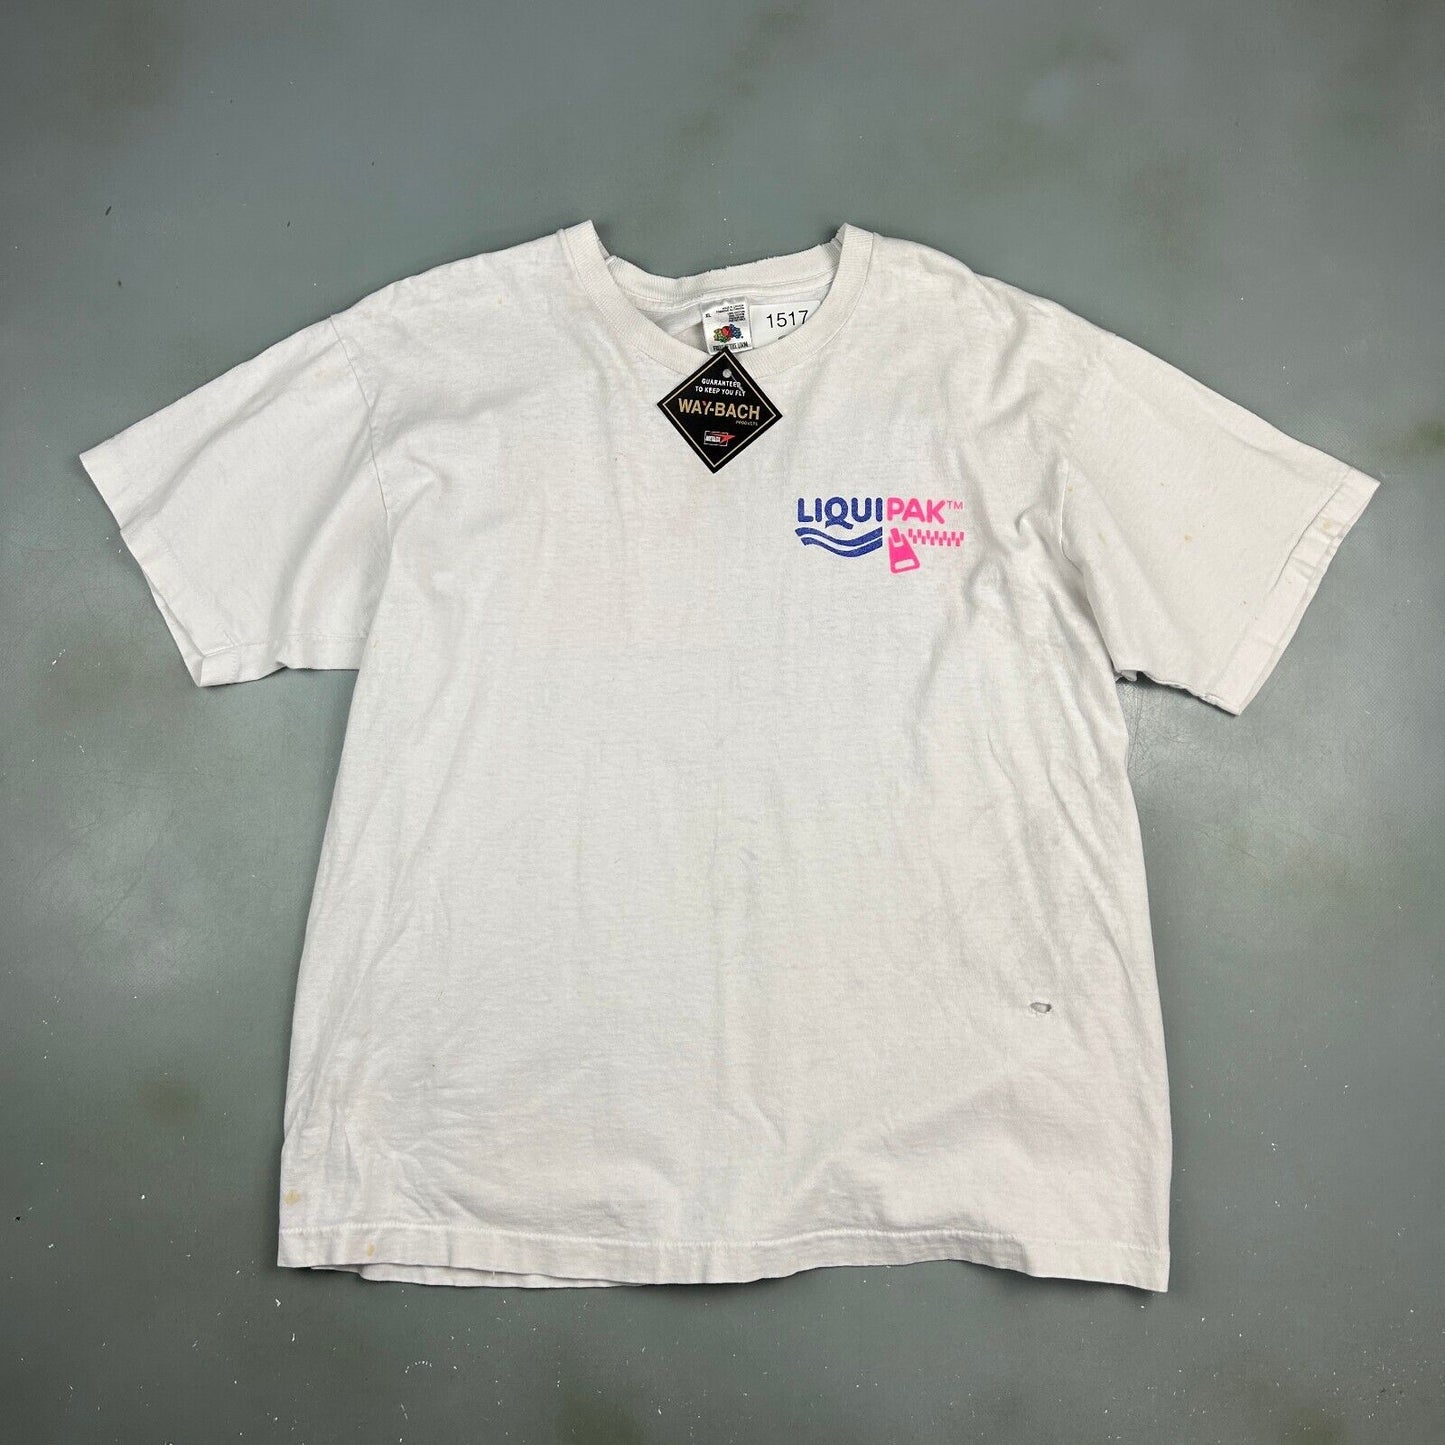 VINTAGE 90s | Liquipak Whats Inside Counts White T-Shirt sz XL Men Adult